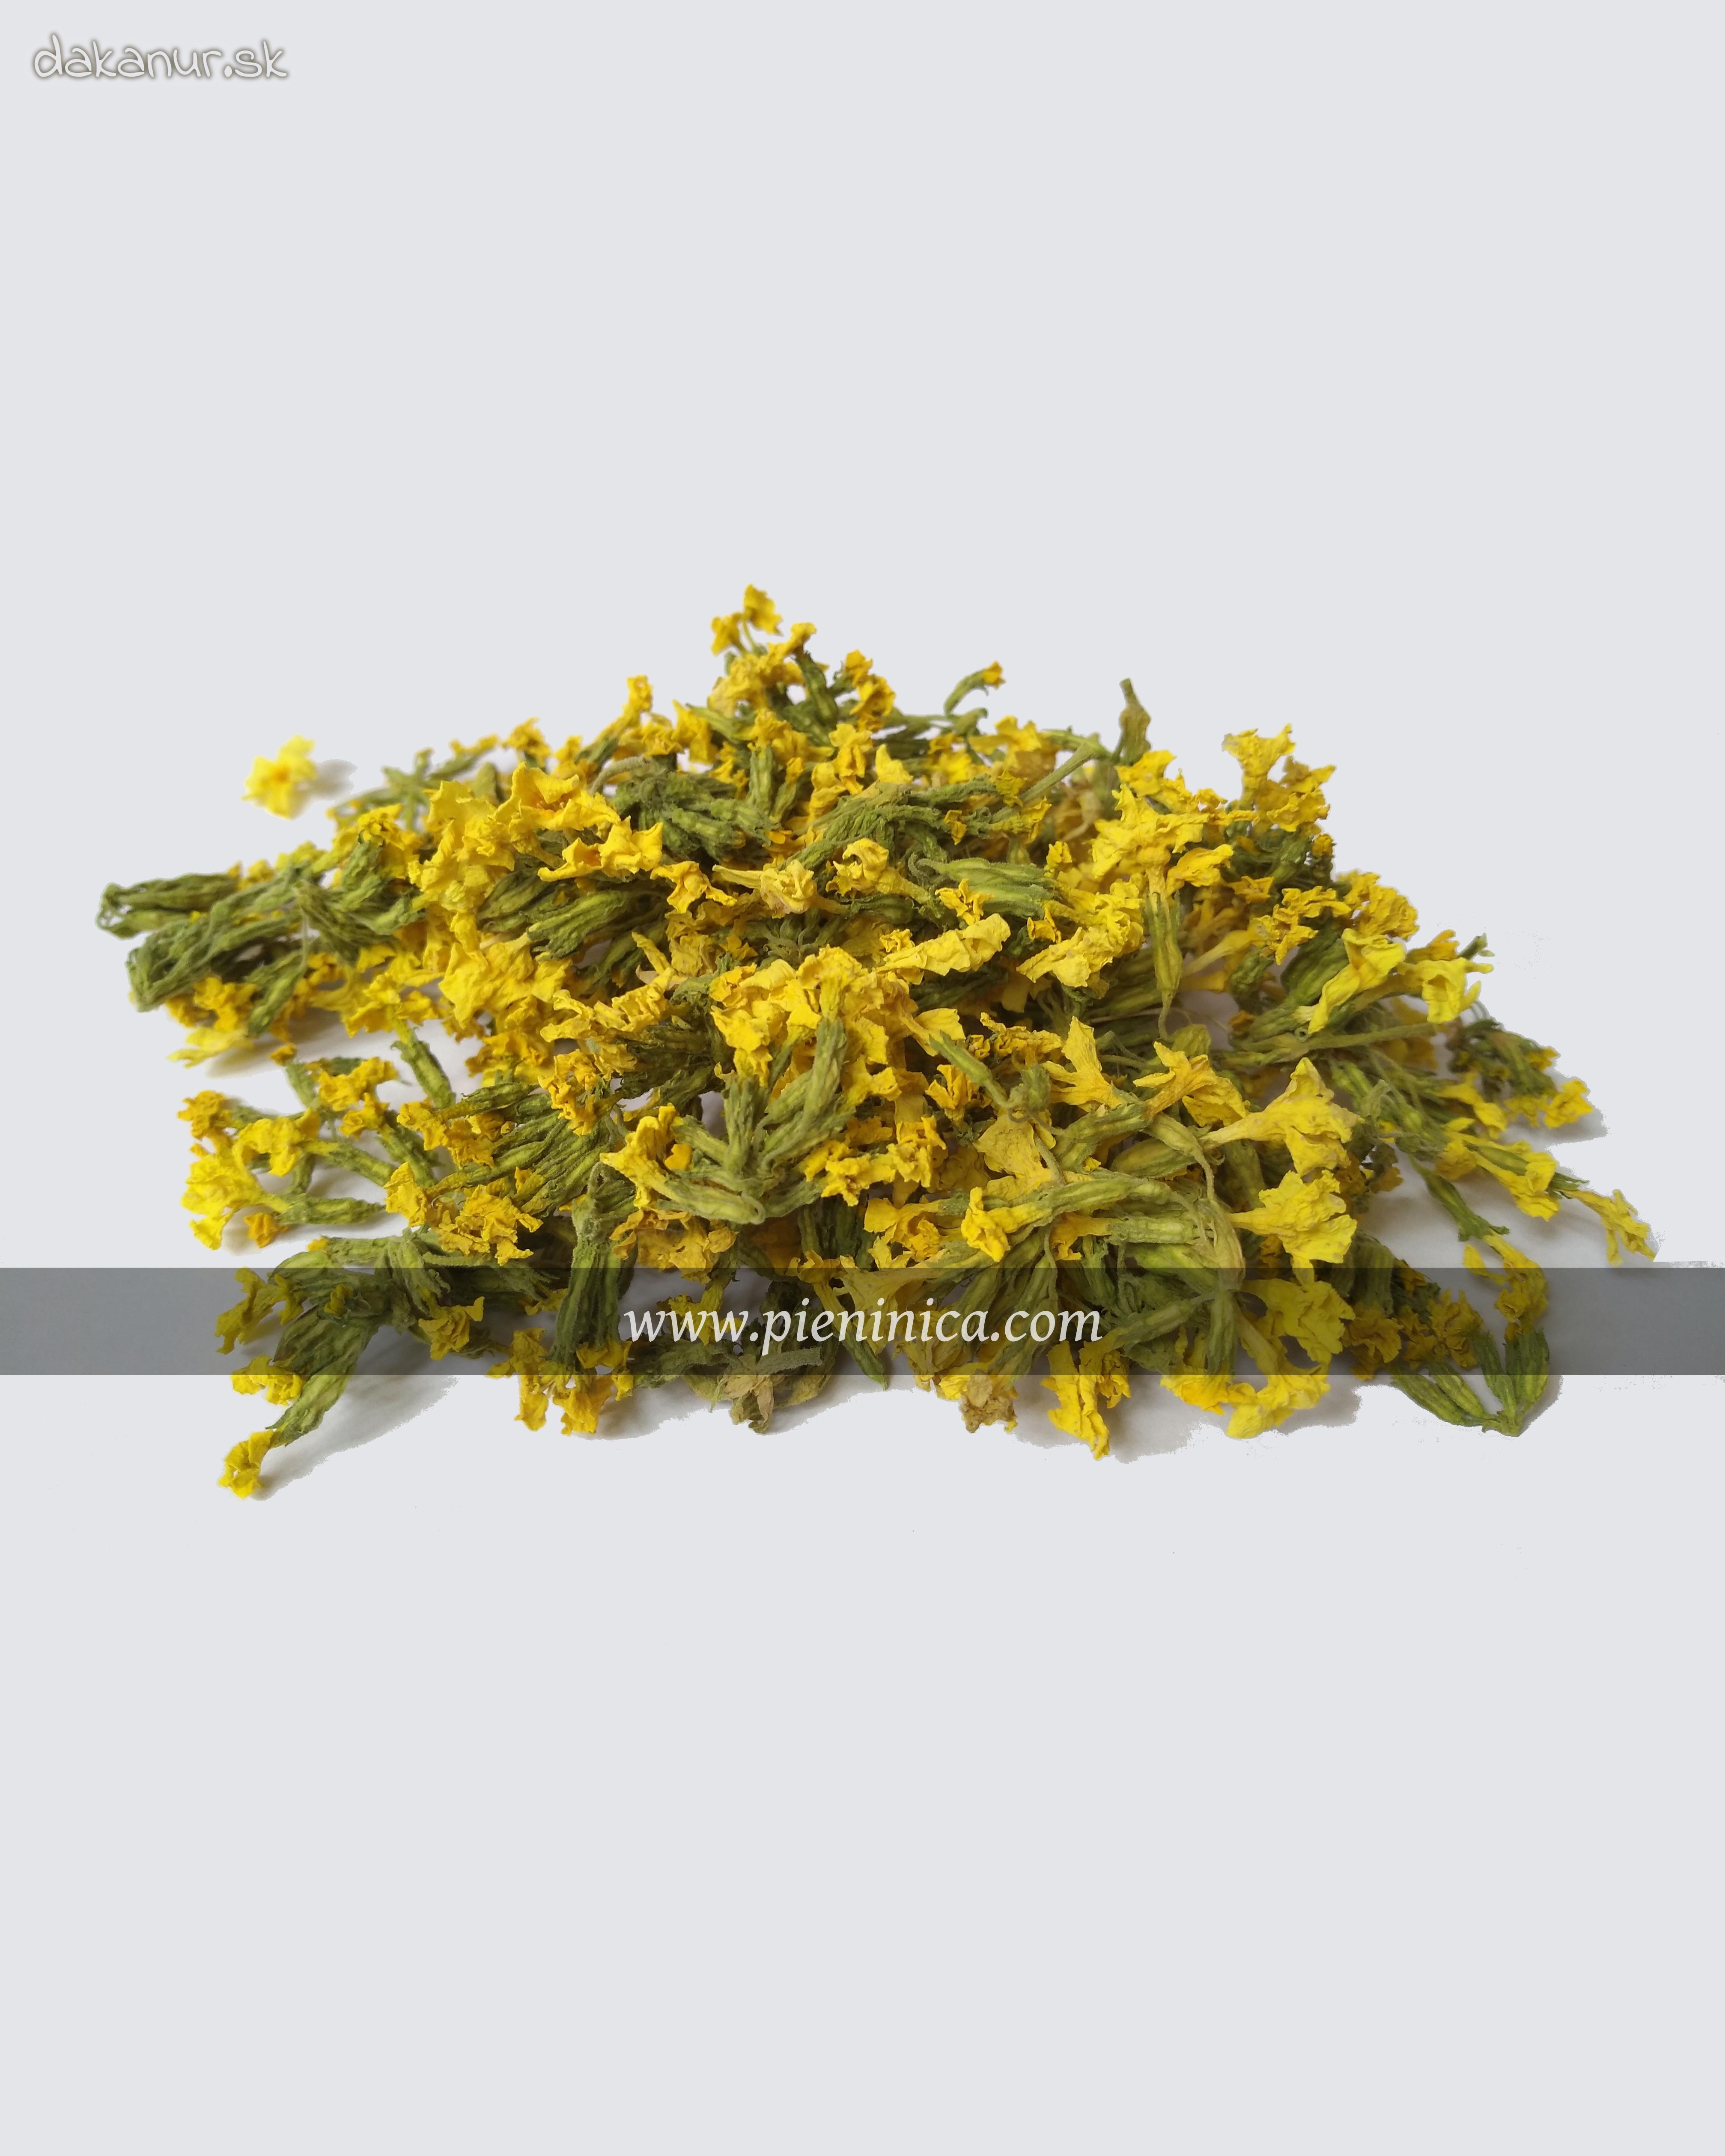 Prvosienka jarná – kvet 20g, Pieninica sušené byliny